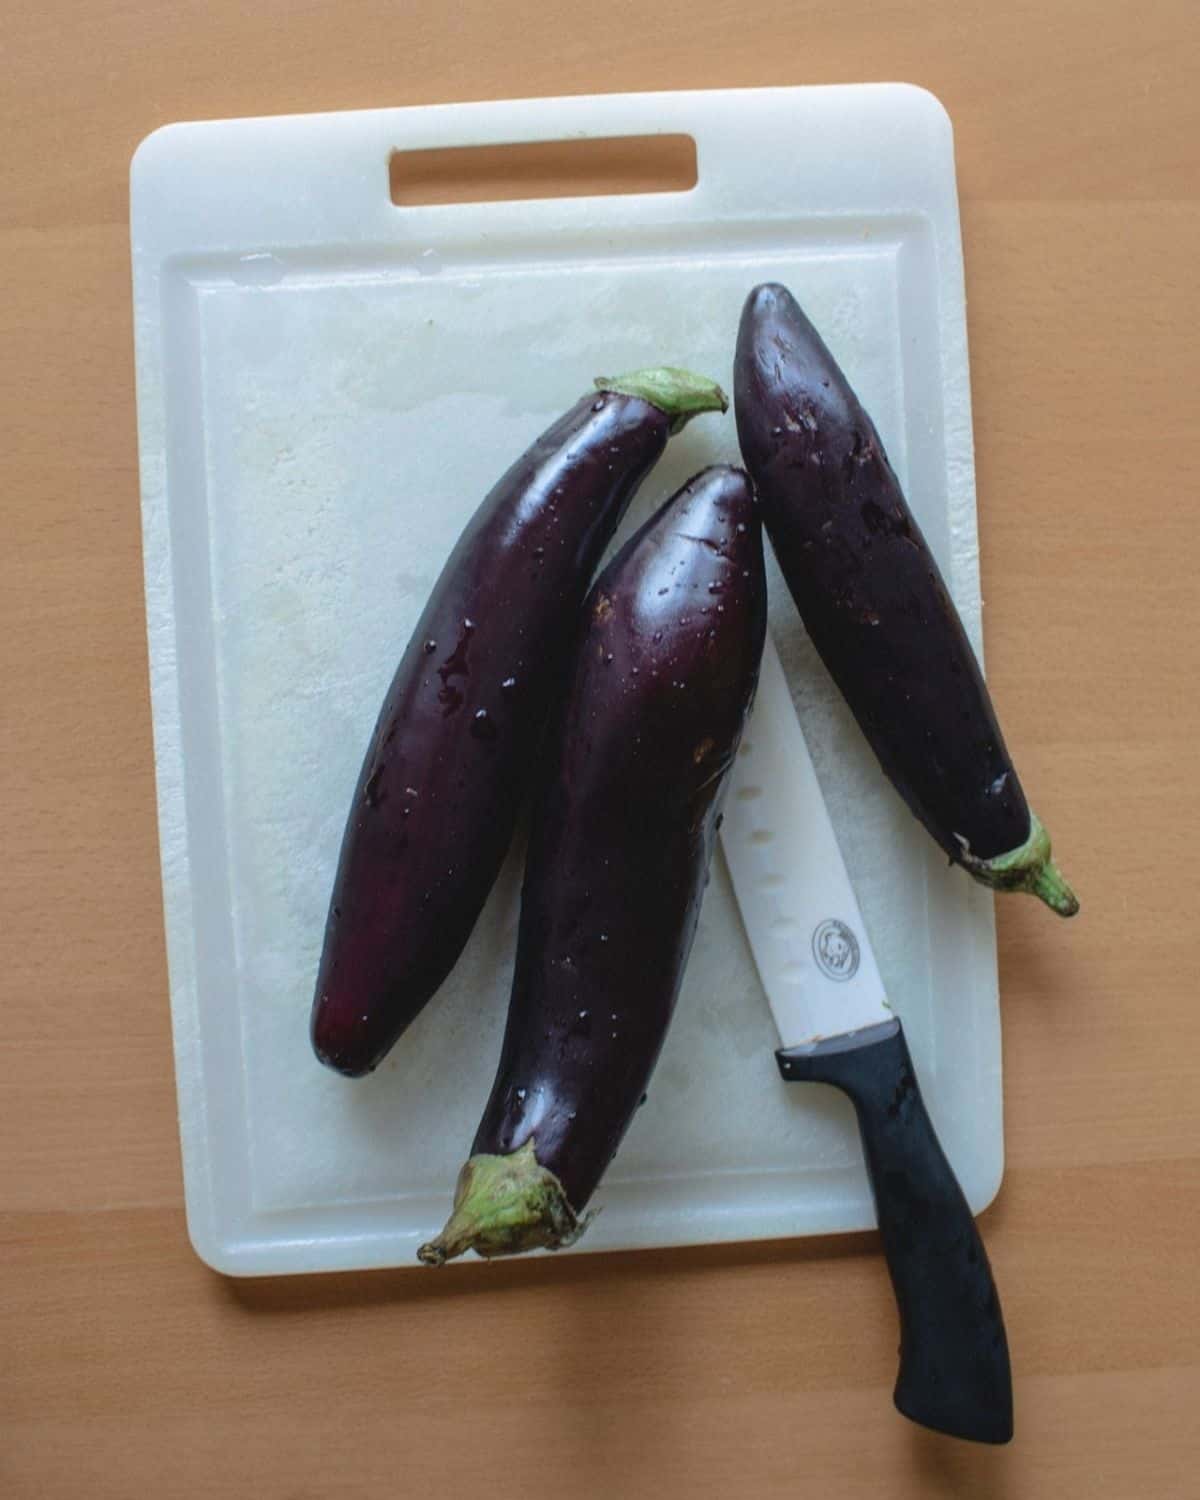 Cut egplants - Process Eggplants